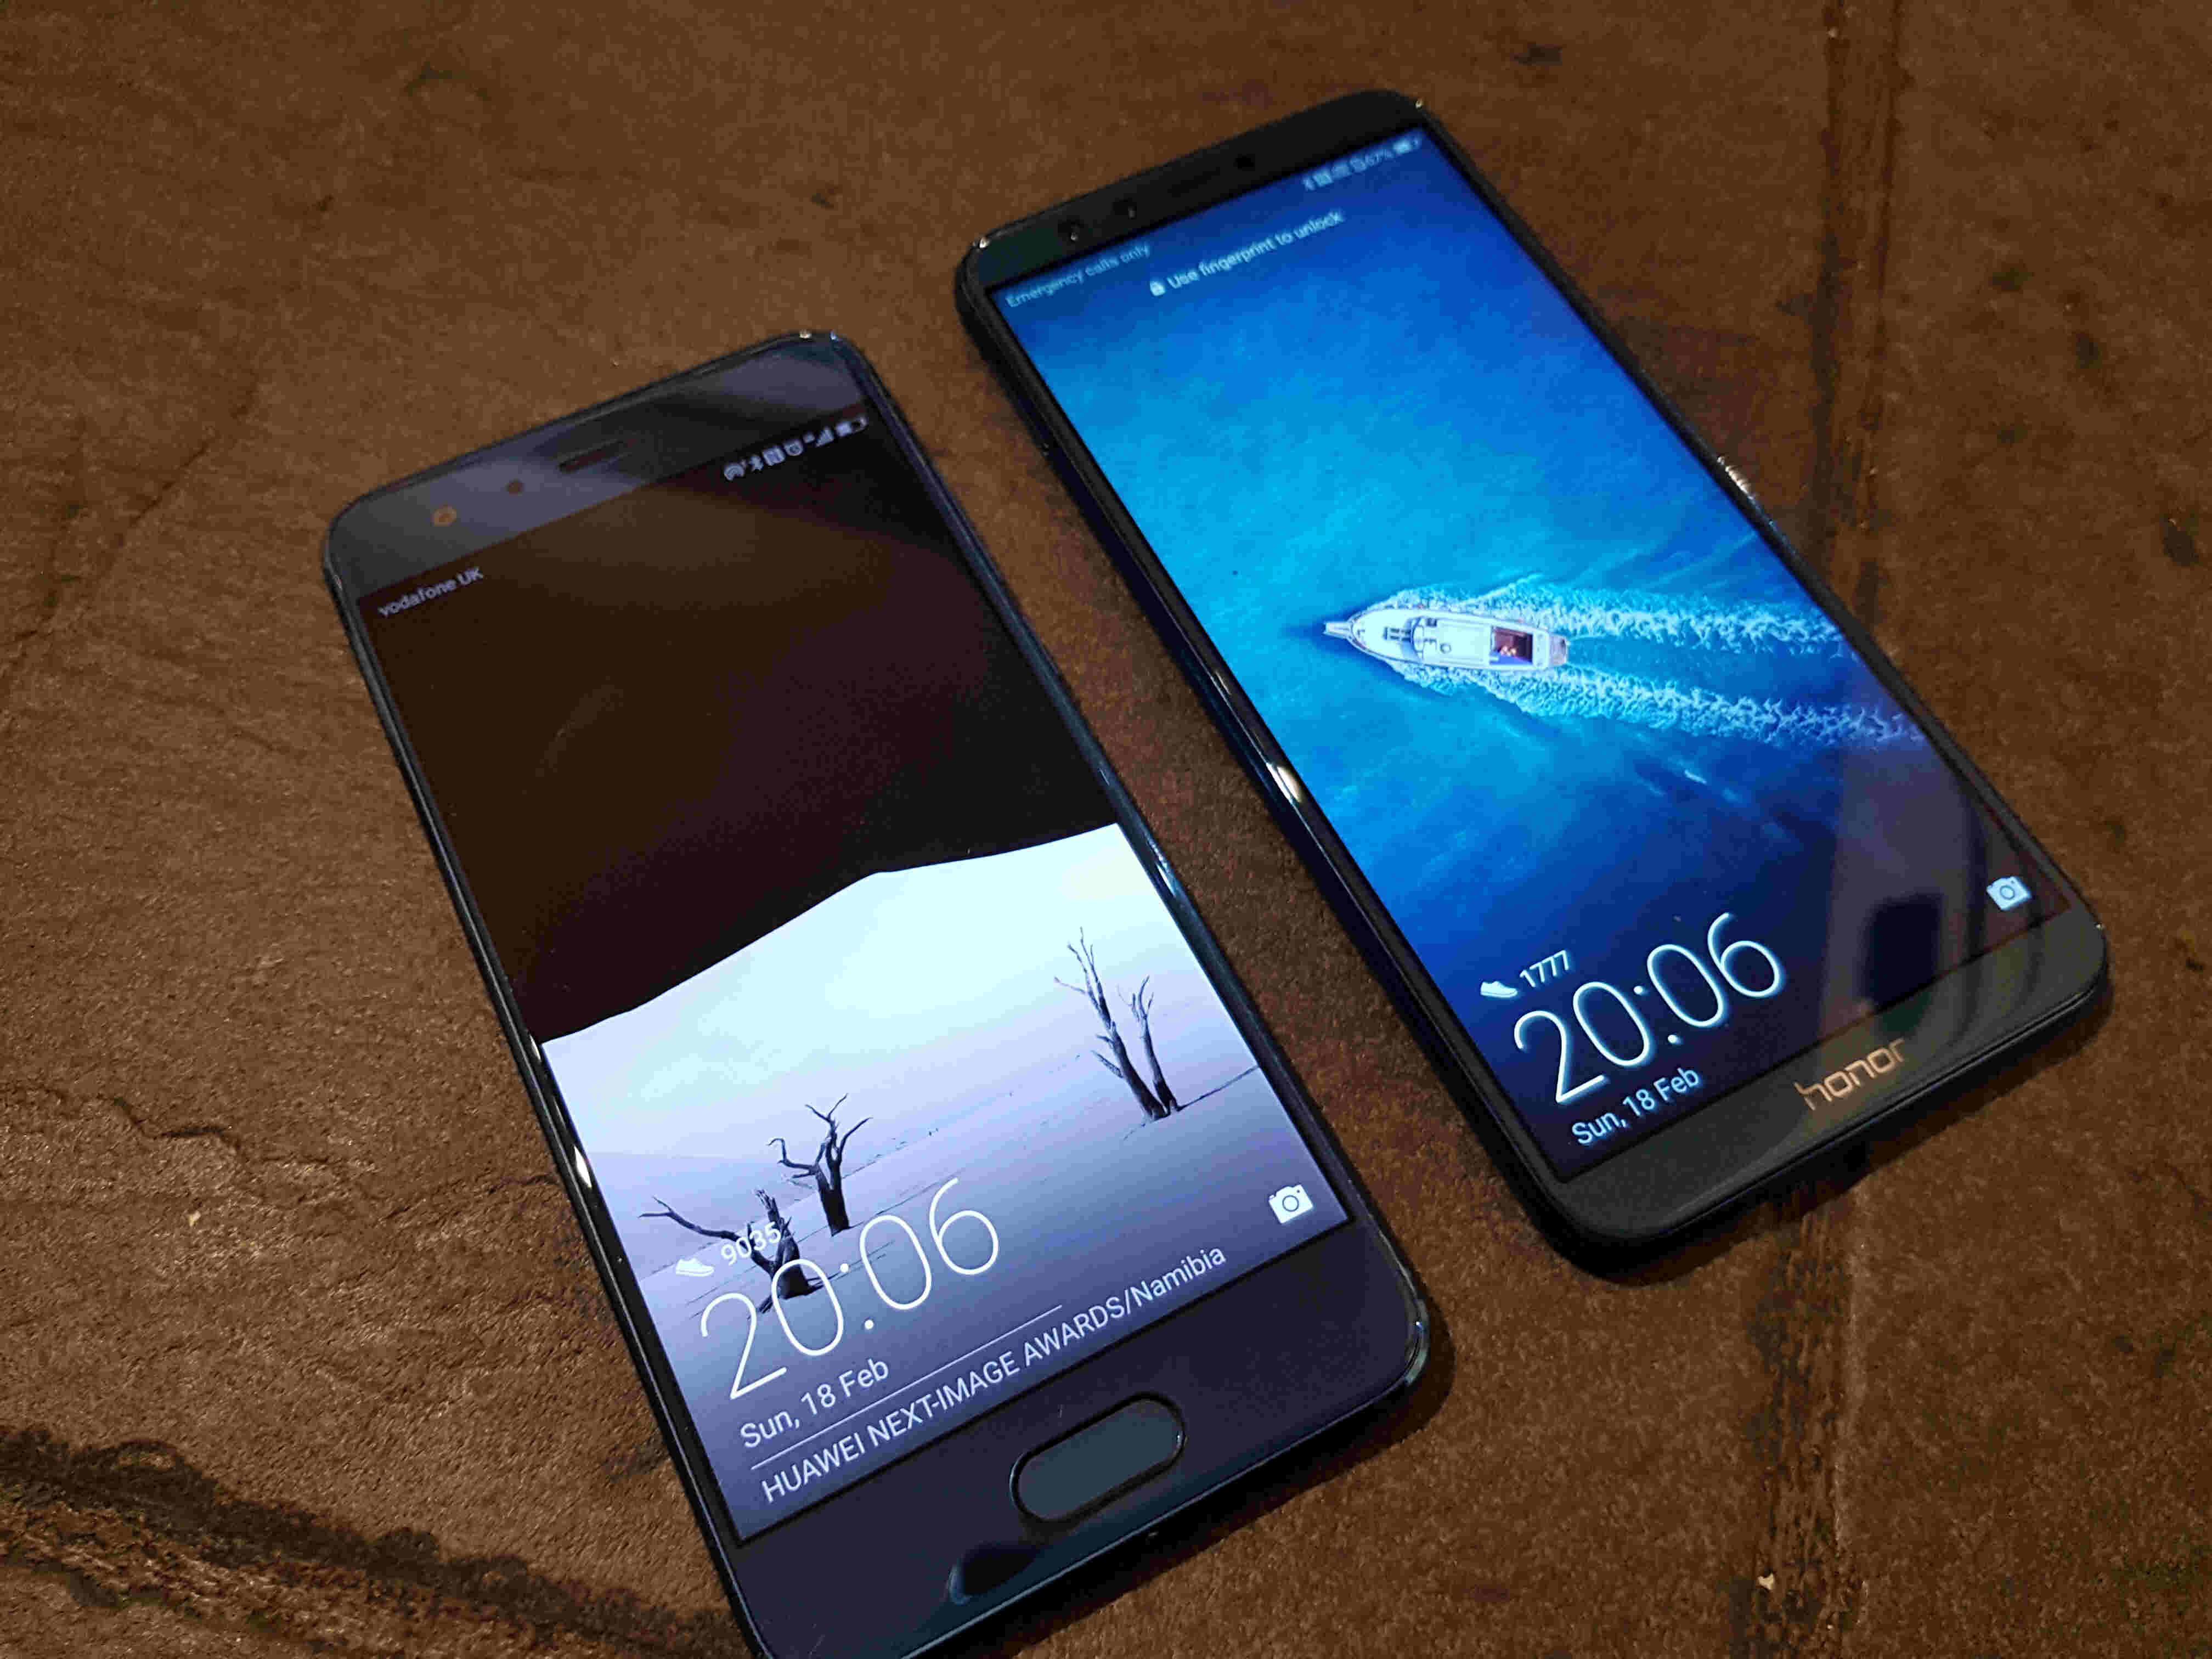 honor-9-lite-vs-honor-9-smartphone-specs-comparison